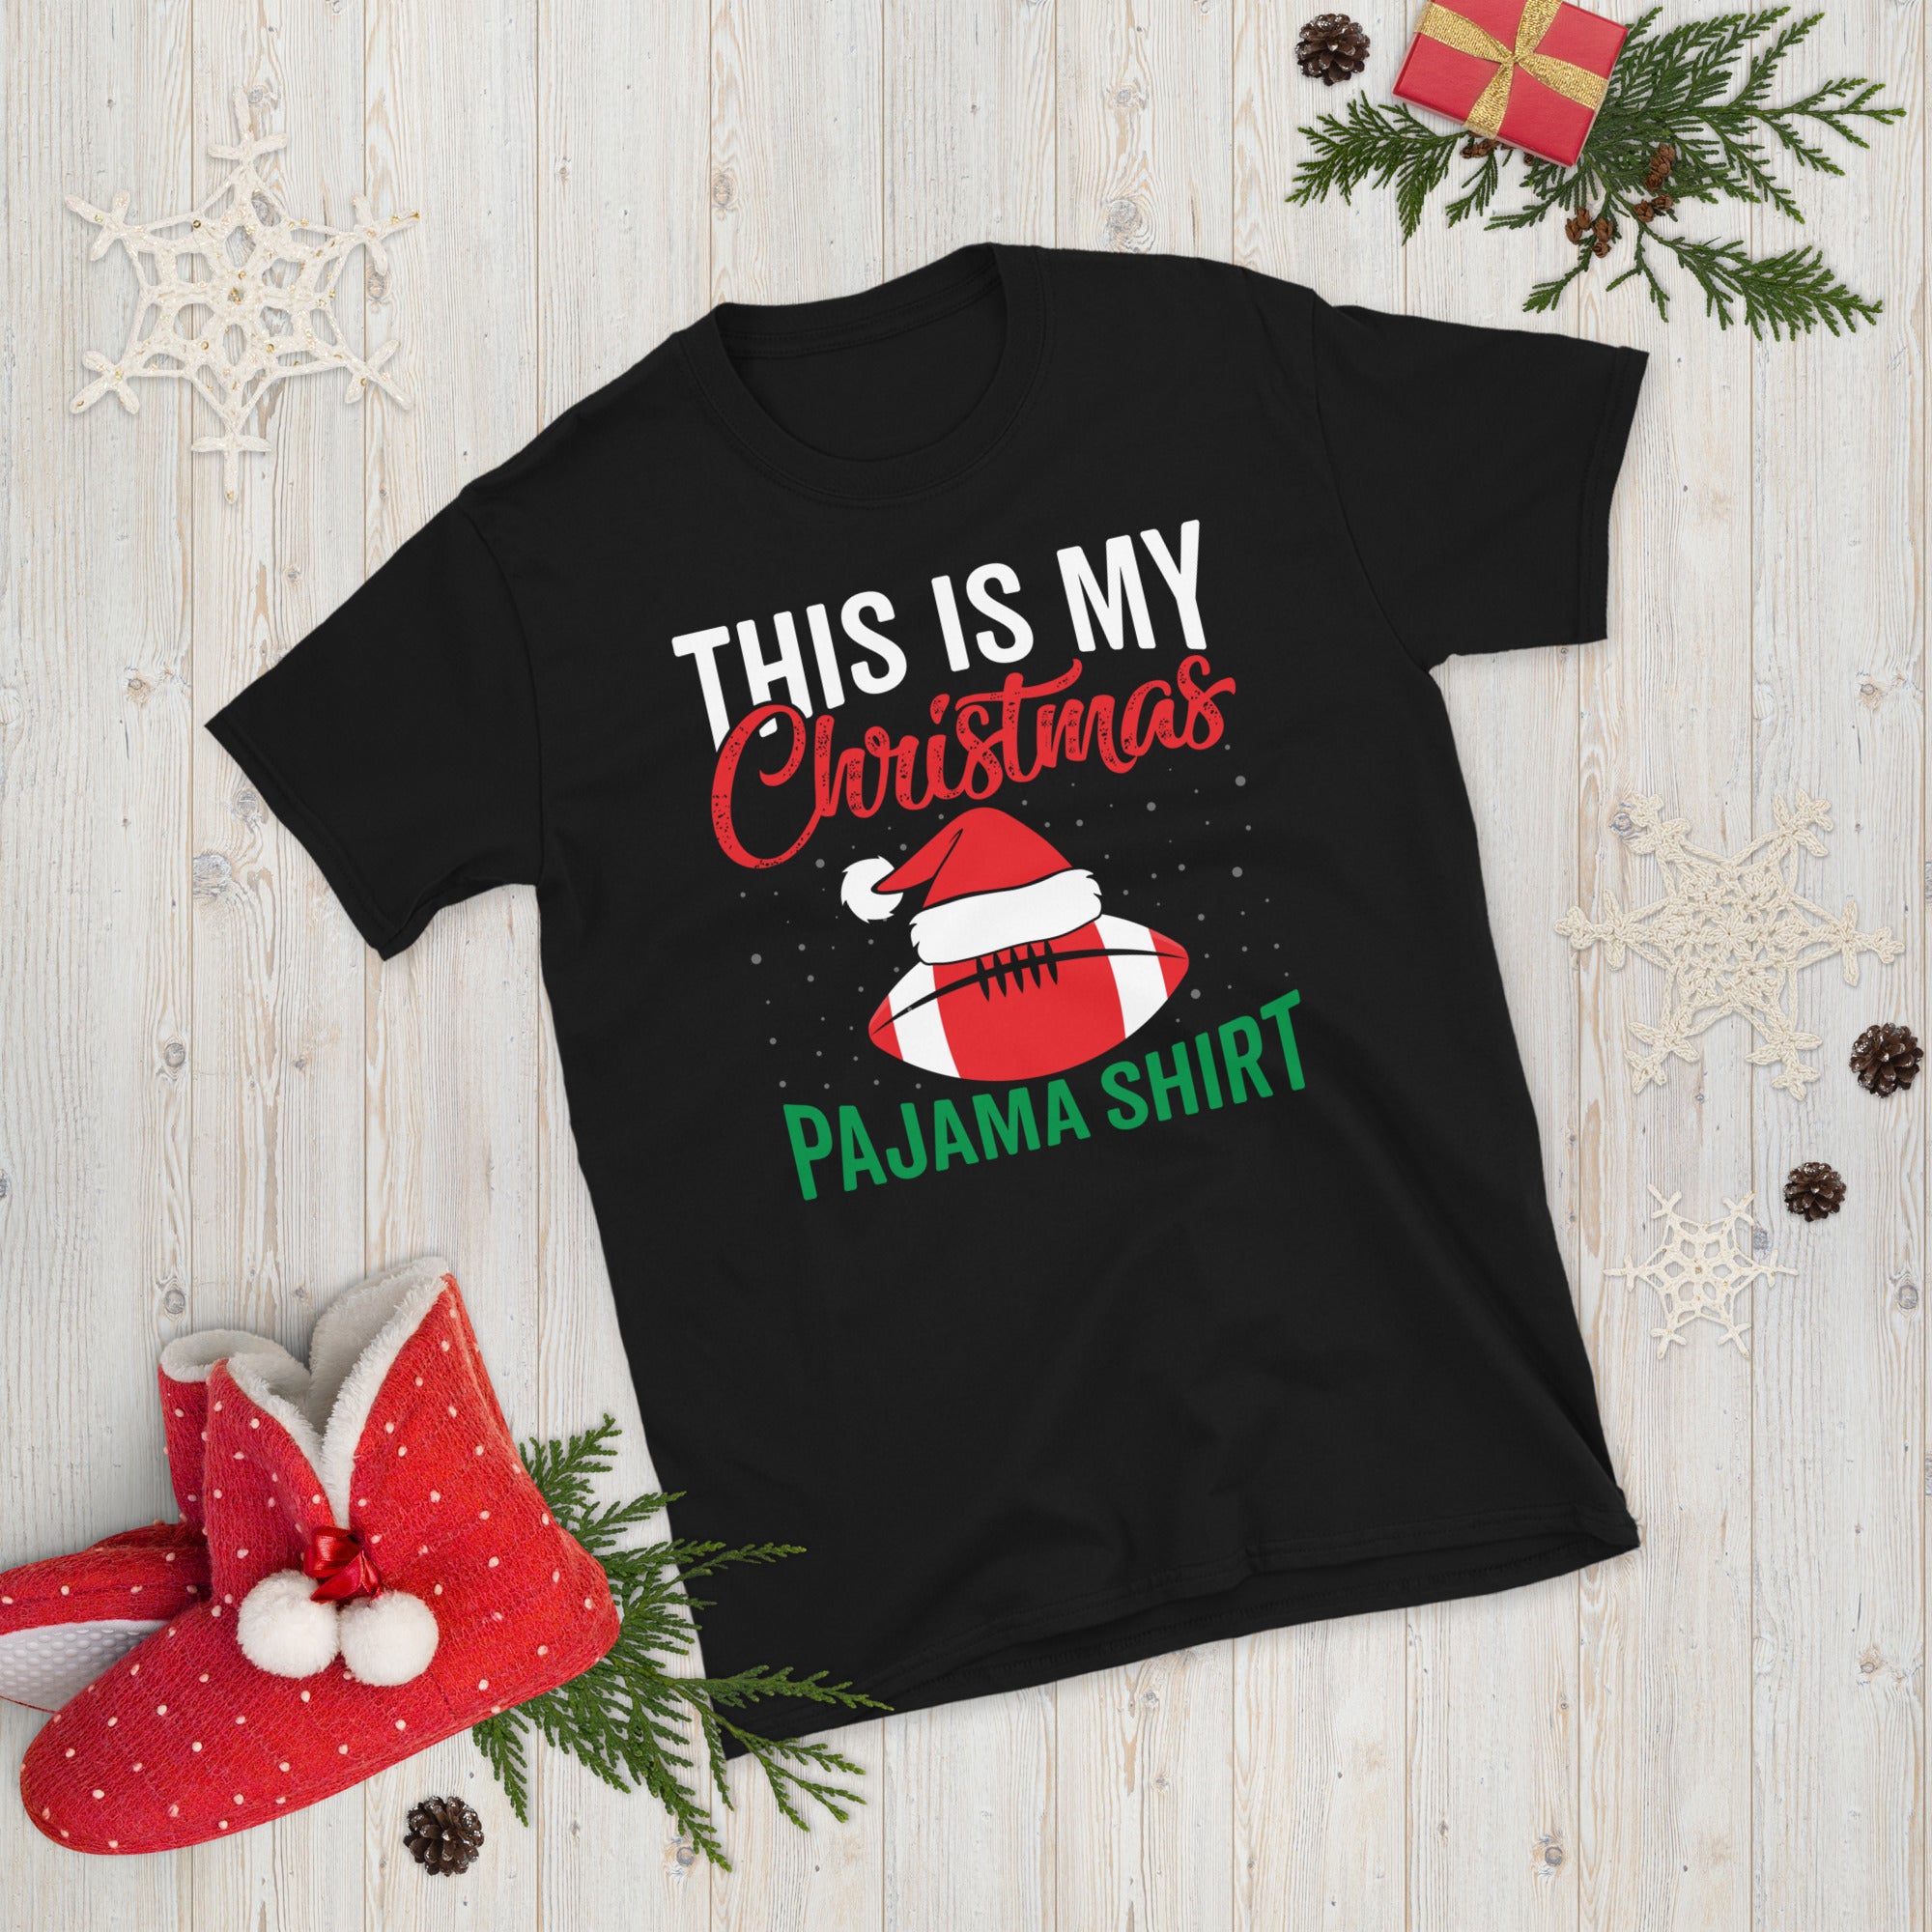 This Is My Christmas Pajama Shirt, Christmas Football Shirt, American Football T Shirt, Football Christmas Gift, Xmas Football Tee - Madeinsea©